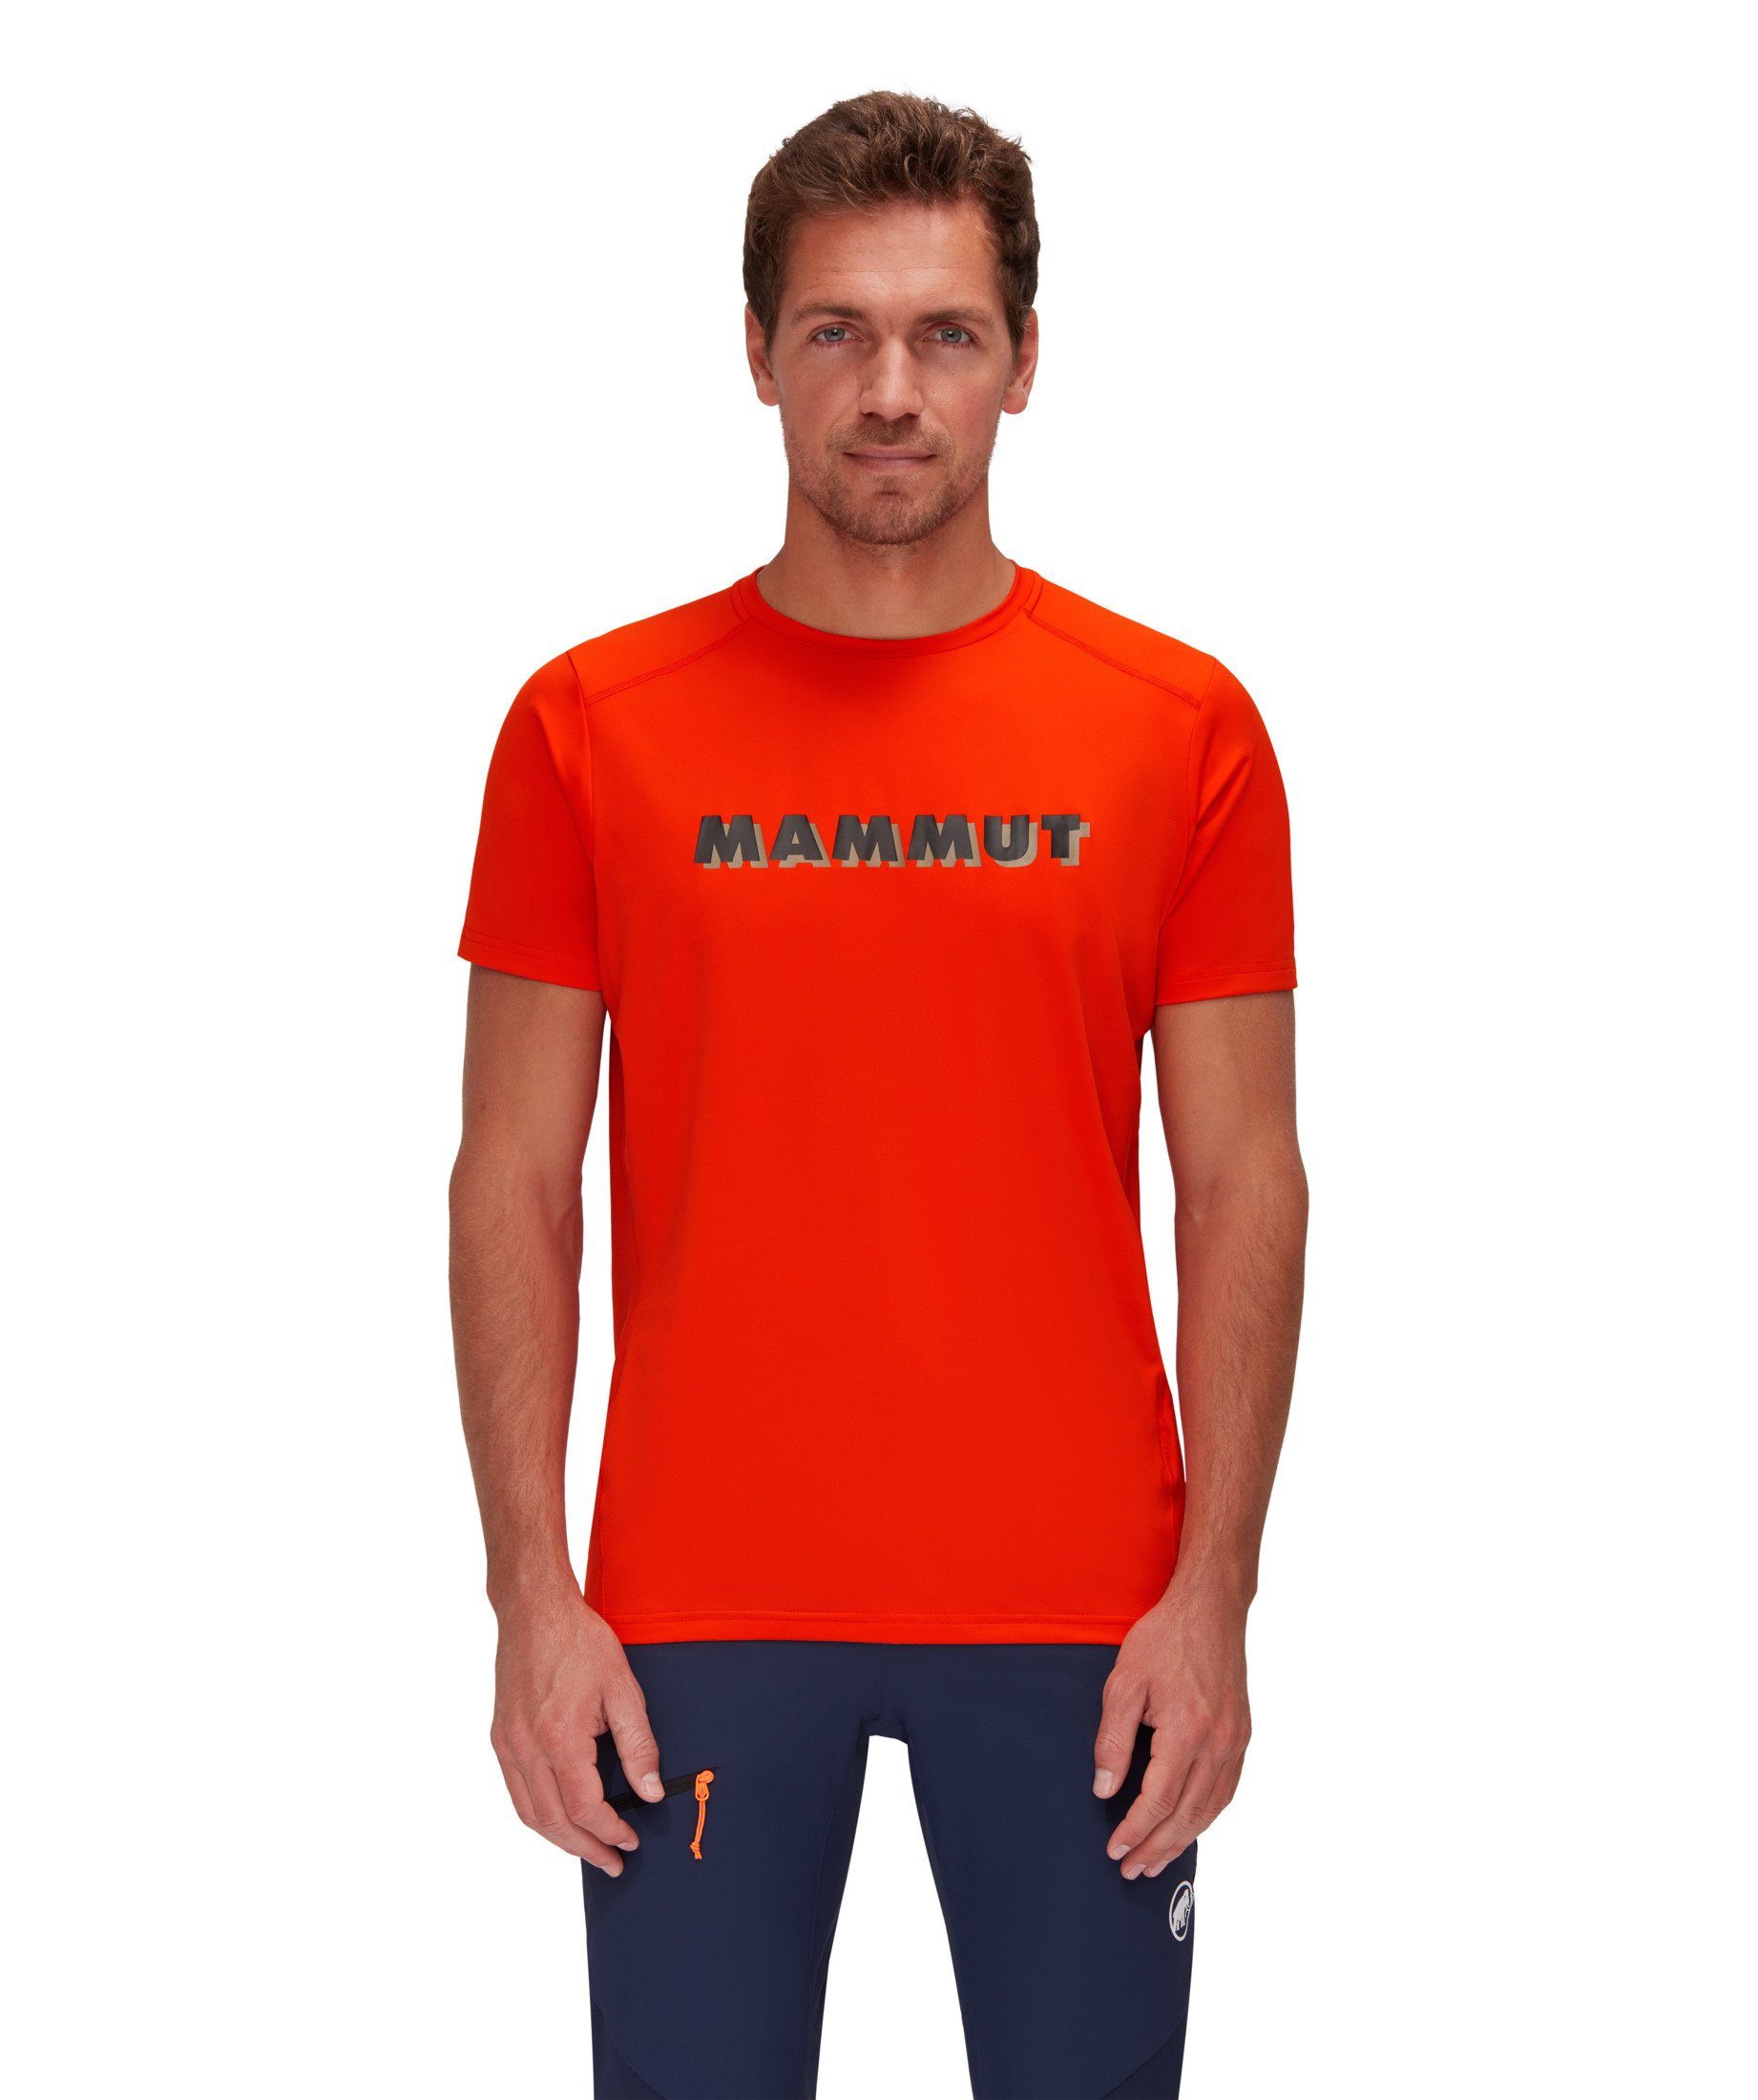 Mammut T-Shirt Splide Logo red Men hot T-Shirt